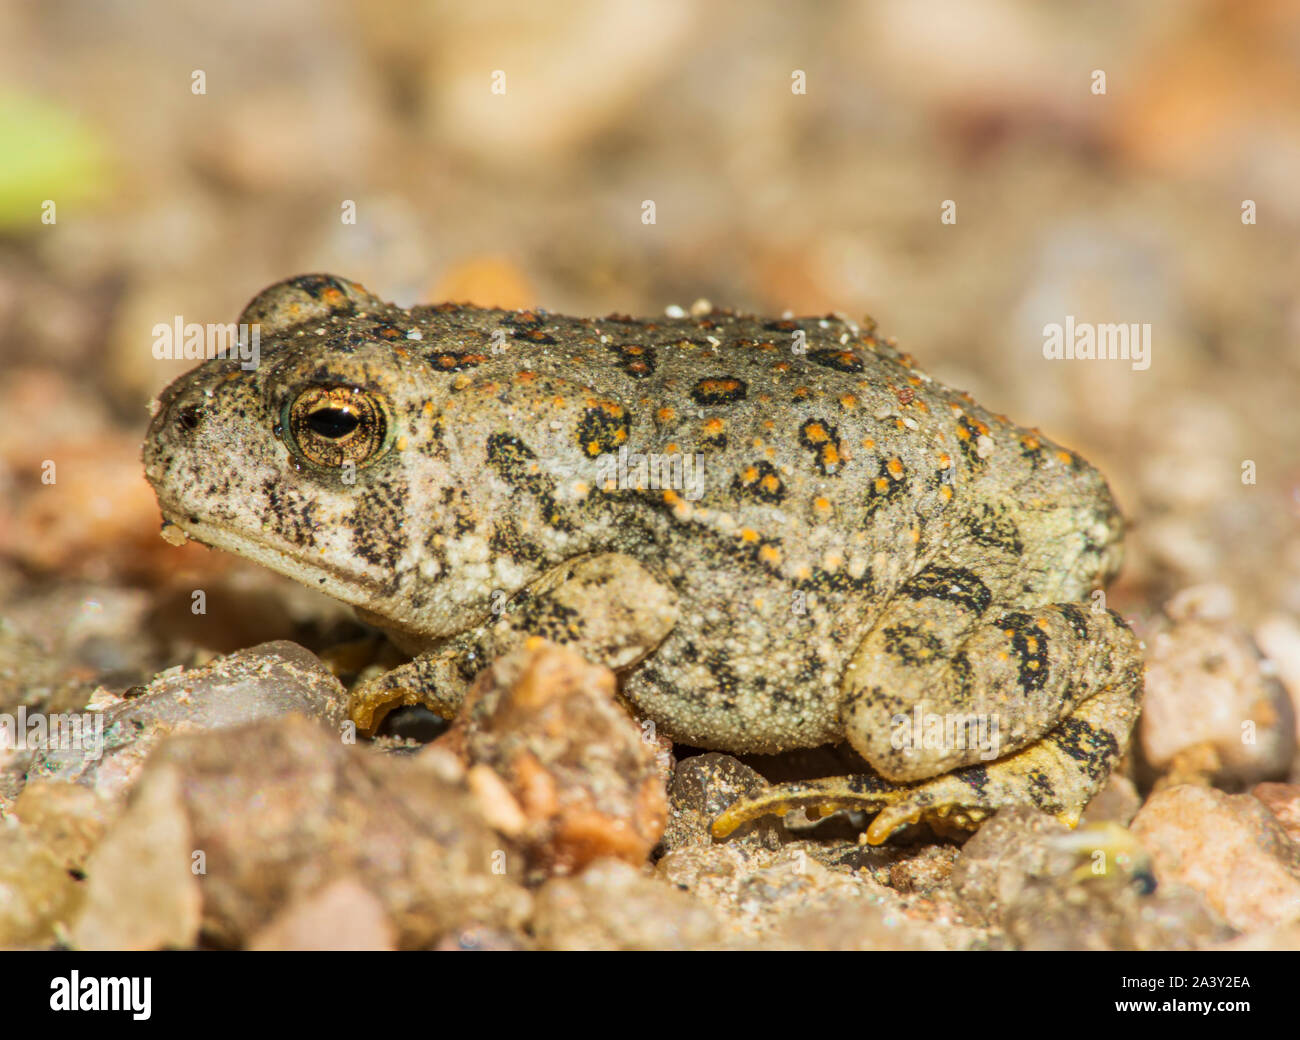 Tiny giovani Woodhouse's toad appena due pollici di lunghezza si trova in zona sabbiosa vicino oriente prugna Creek, Castle Rock Colorado US. Foto scattata in settembre. Foto Stock